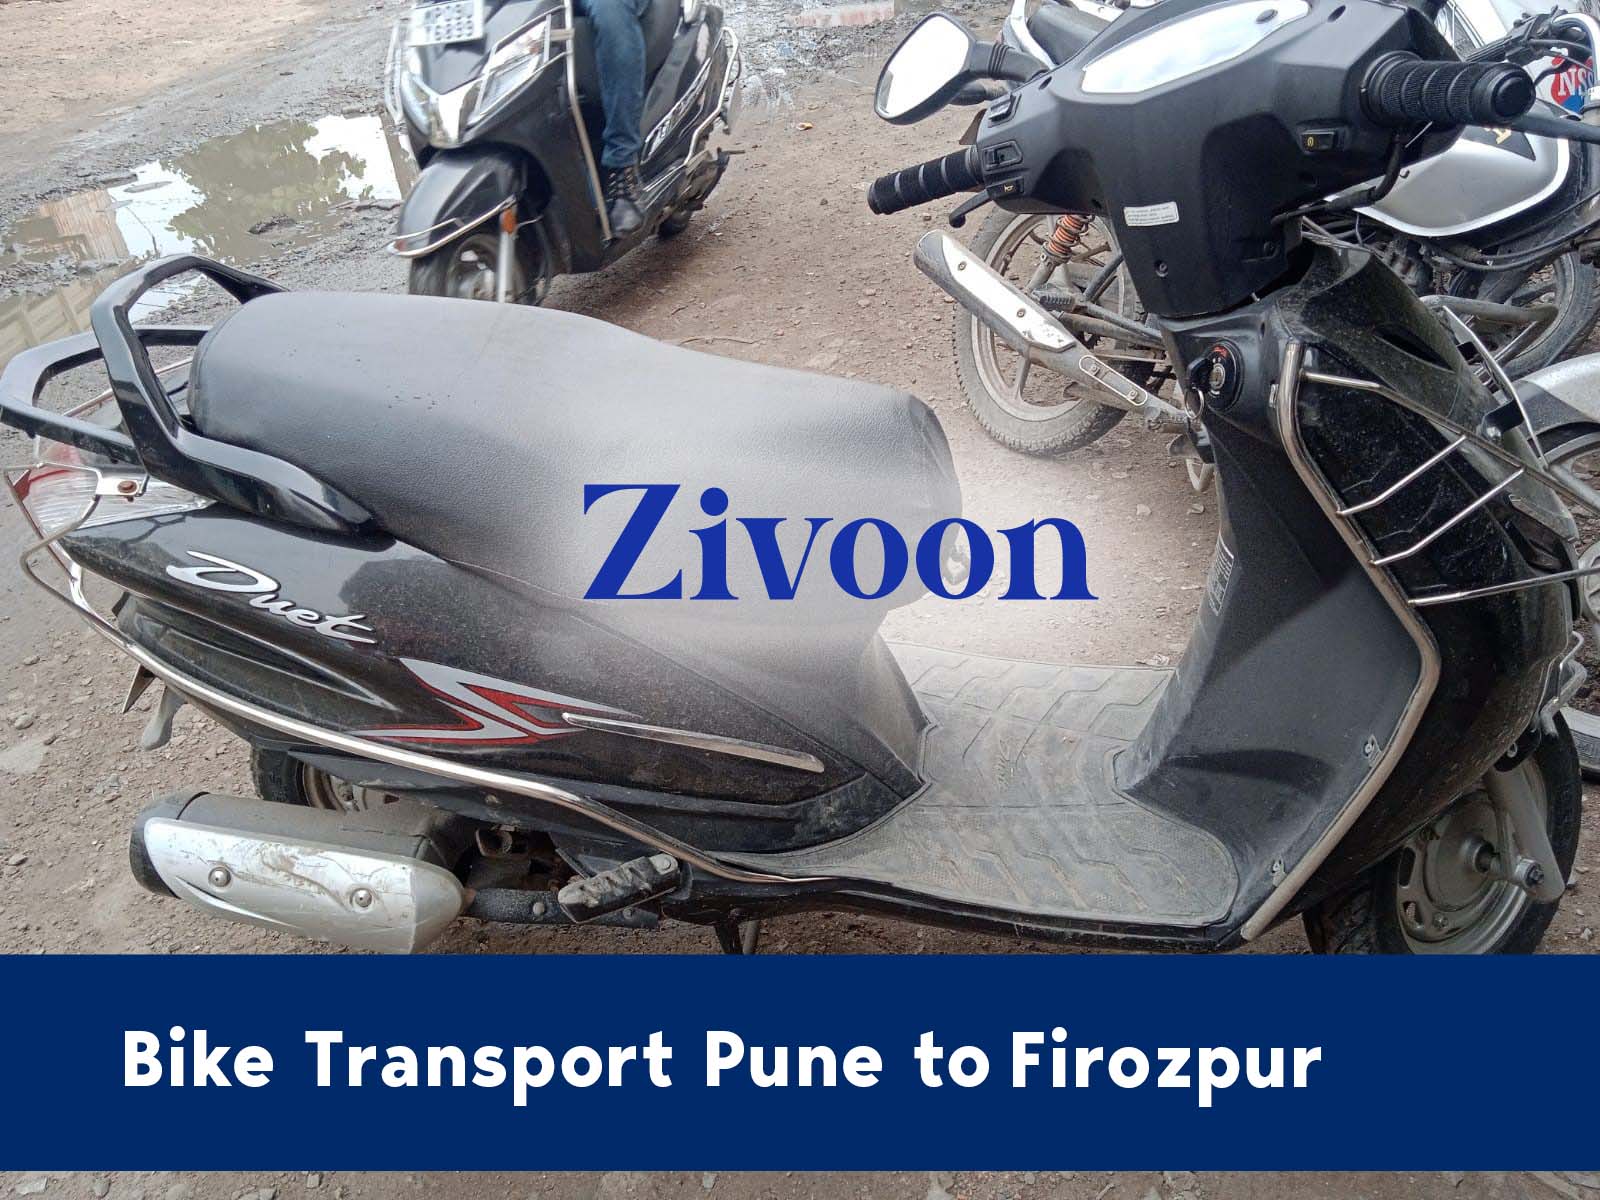 Bike Shifting Service Pune to Firozpur